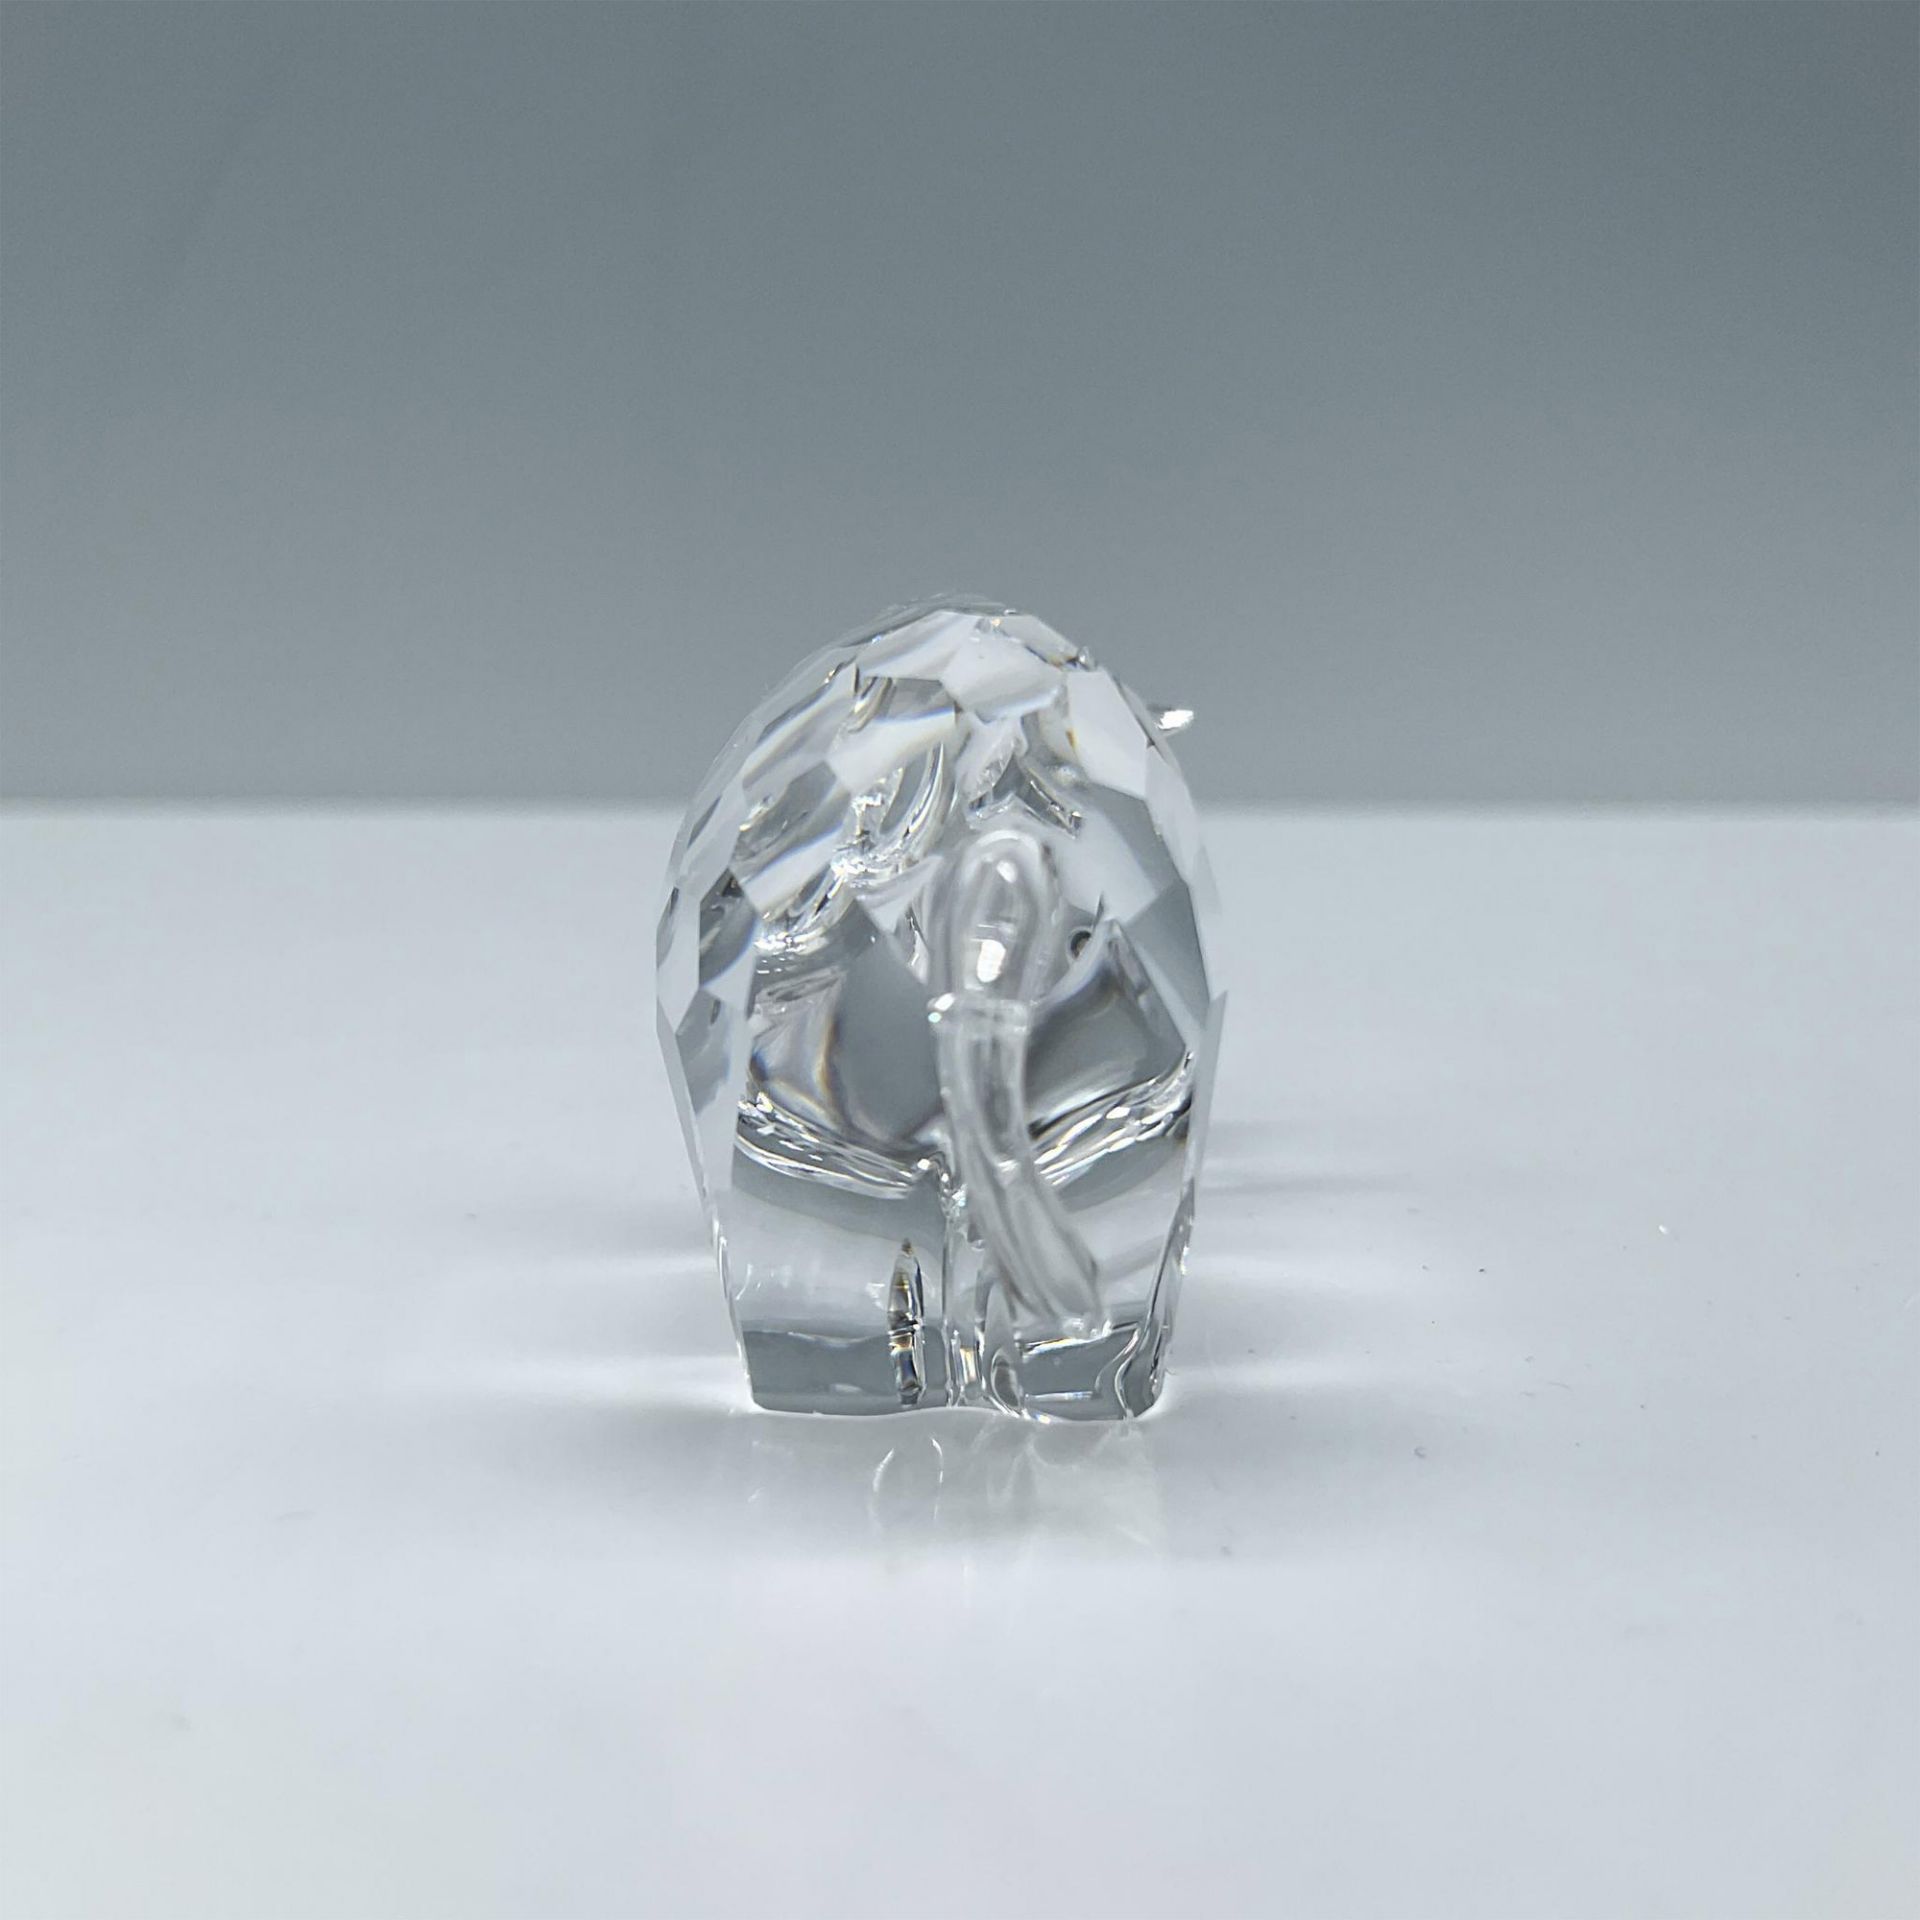 Swarovski Crystal Figurine, Zodiac Rhinoceros - Image 2 of 5